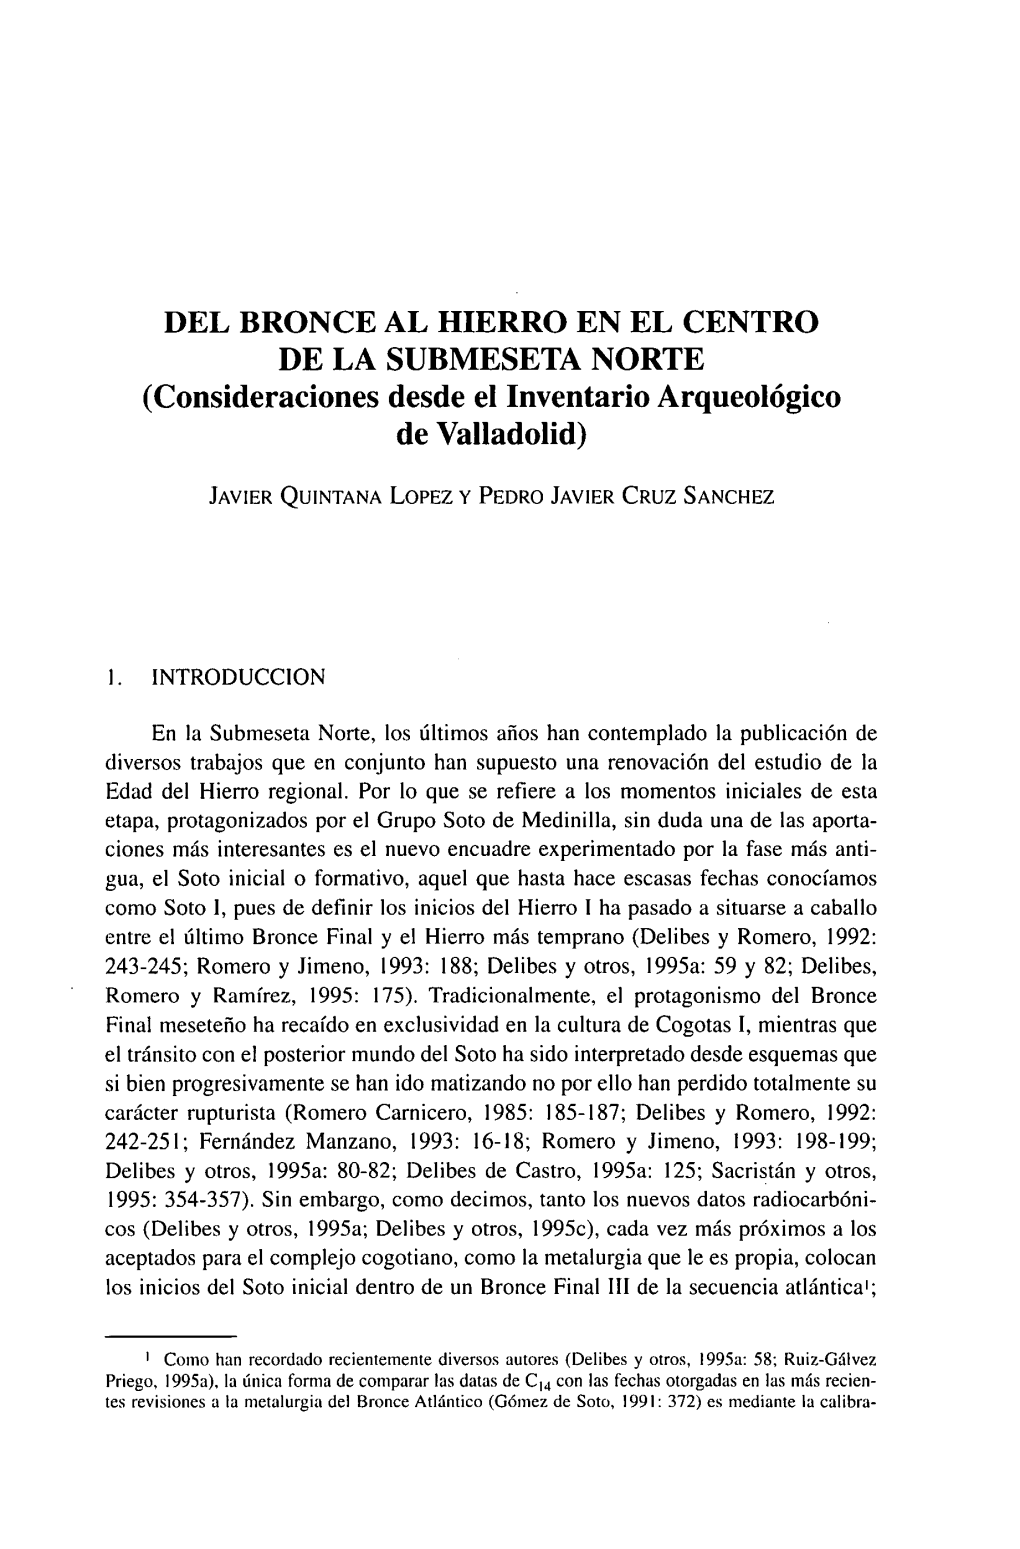 DEL BRONCE AL HIERRO EN EL CENTRO DE LA SUBMESETA NORTE (Consideraciones Desde El Inventario Arqueológico De Valladolid)